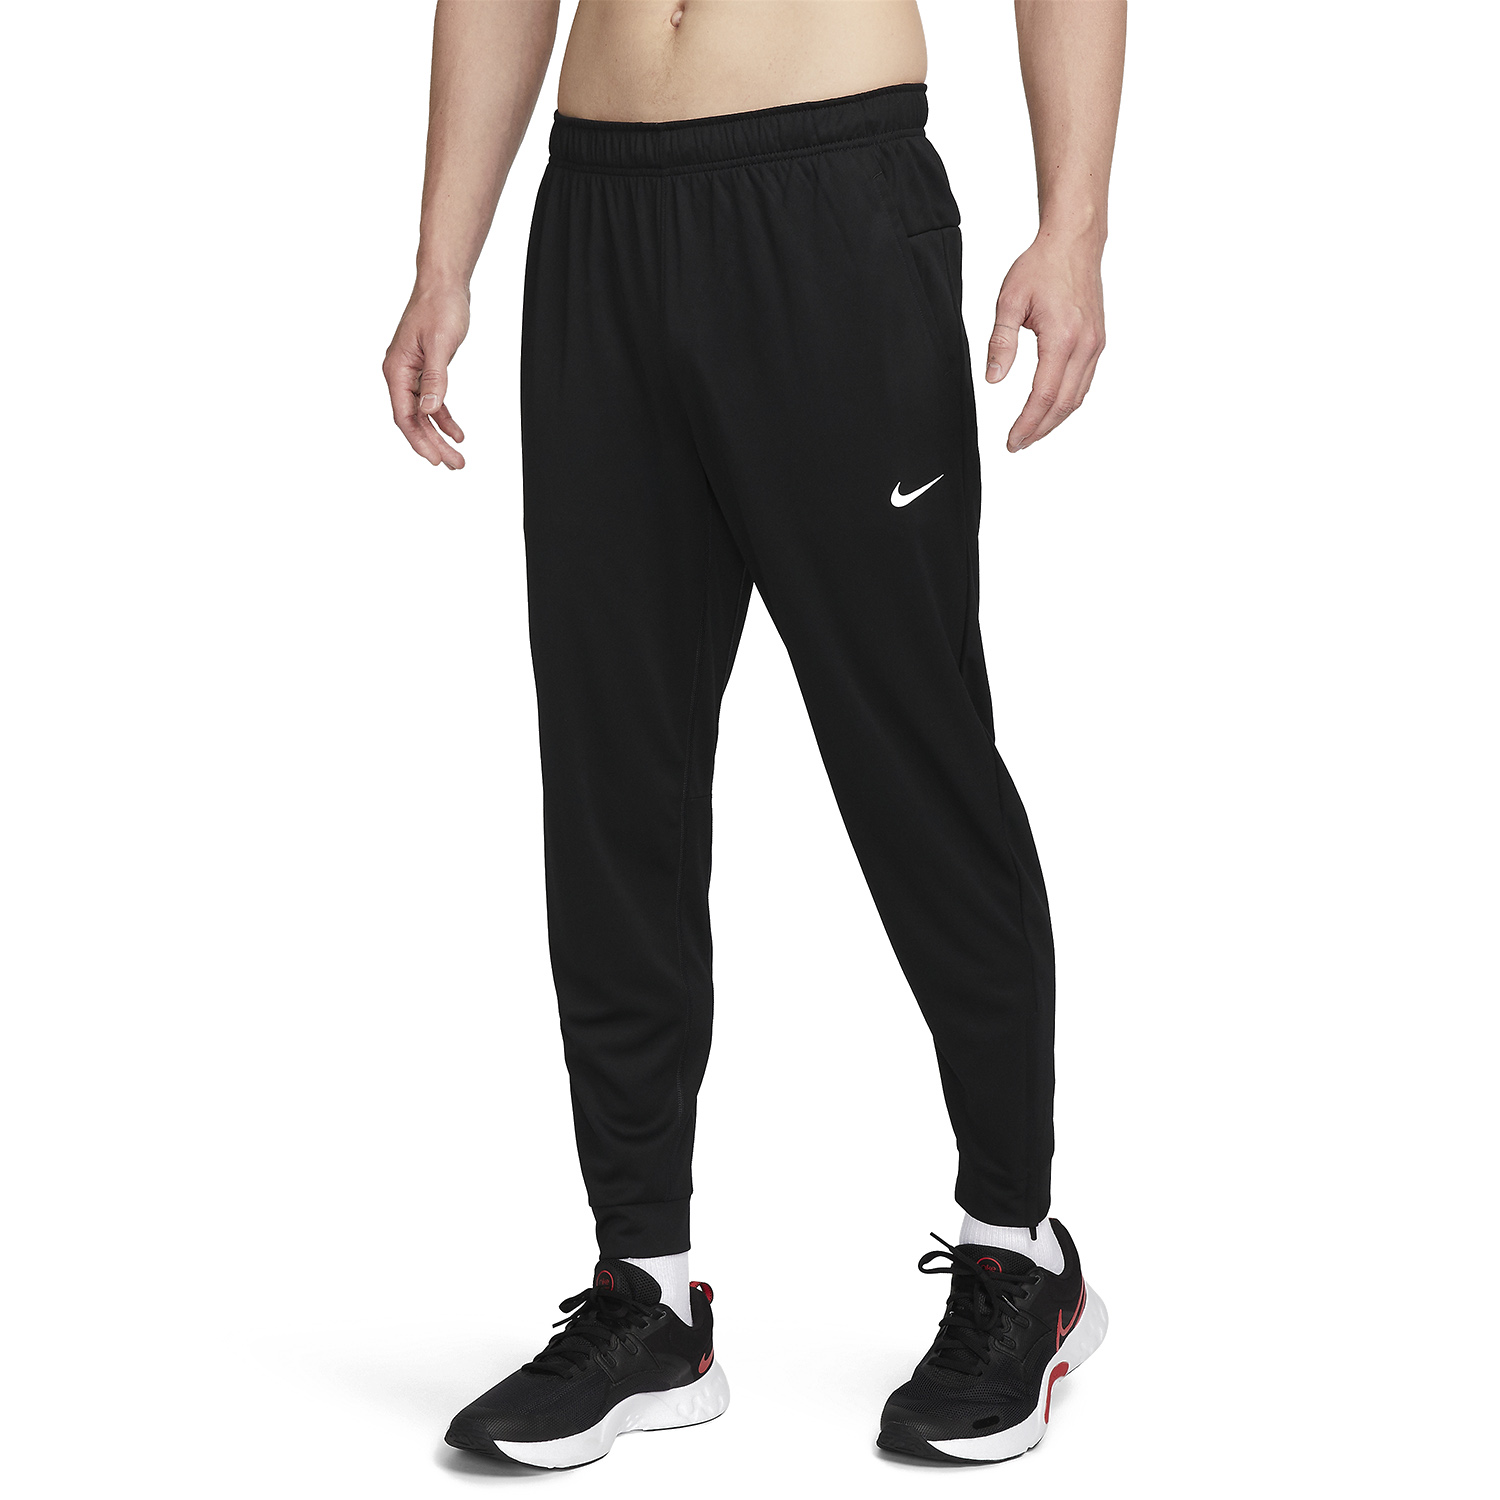 Nike Dri-FIT Totality Men's Training Pants - Black/White